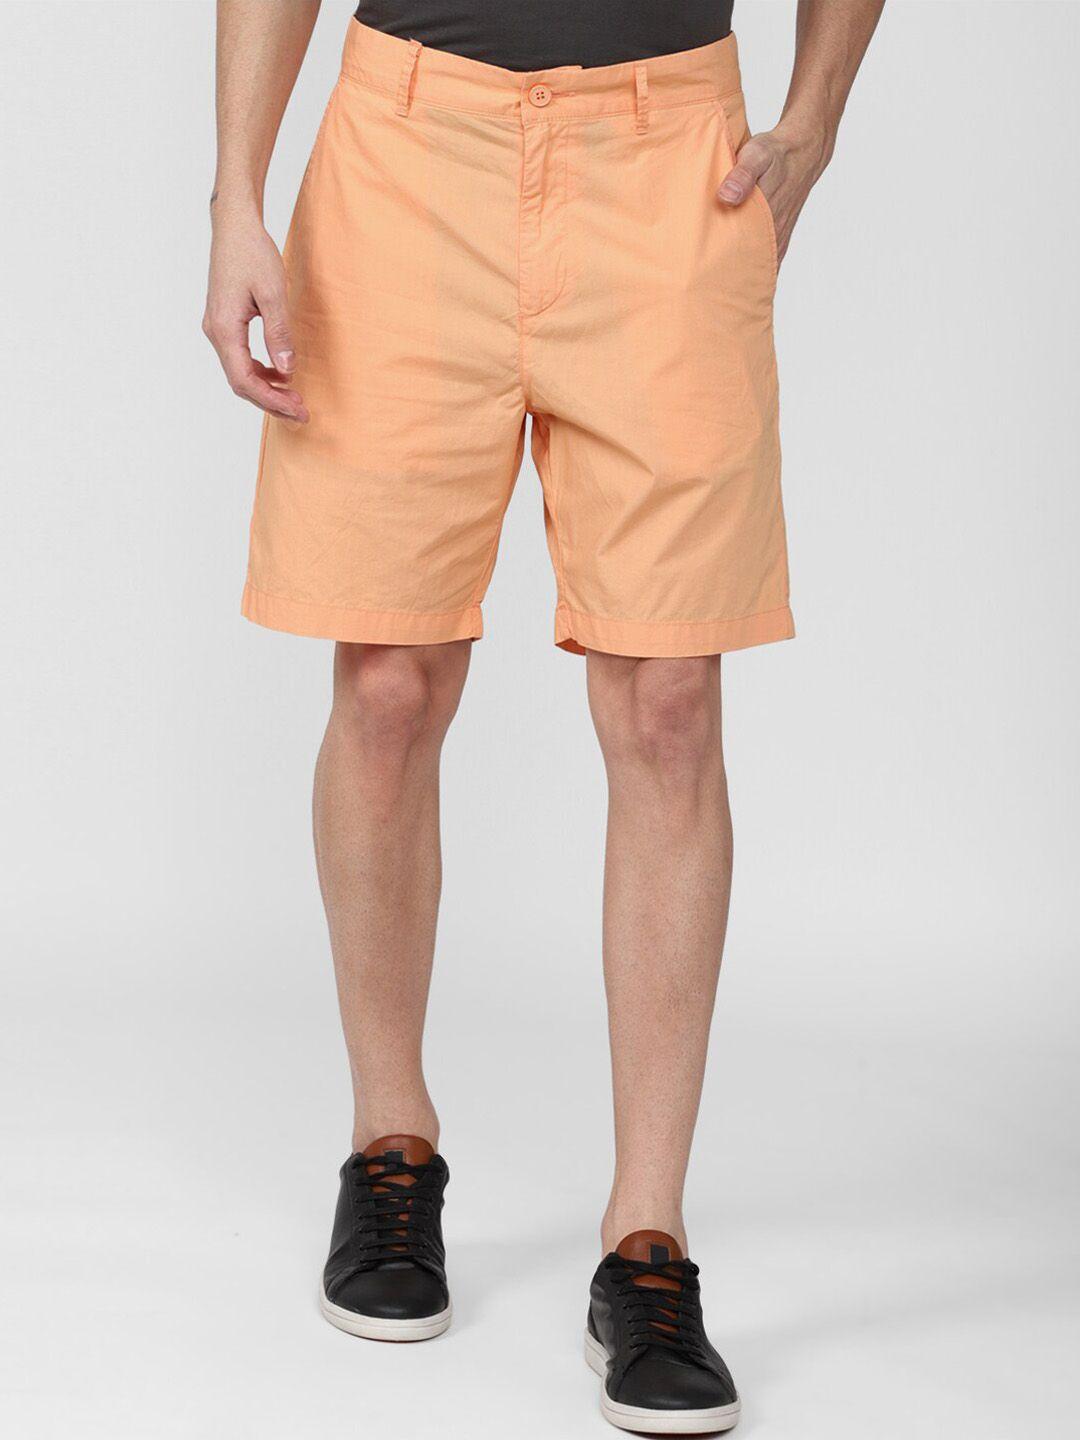 forever-21-men-orange-shorts